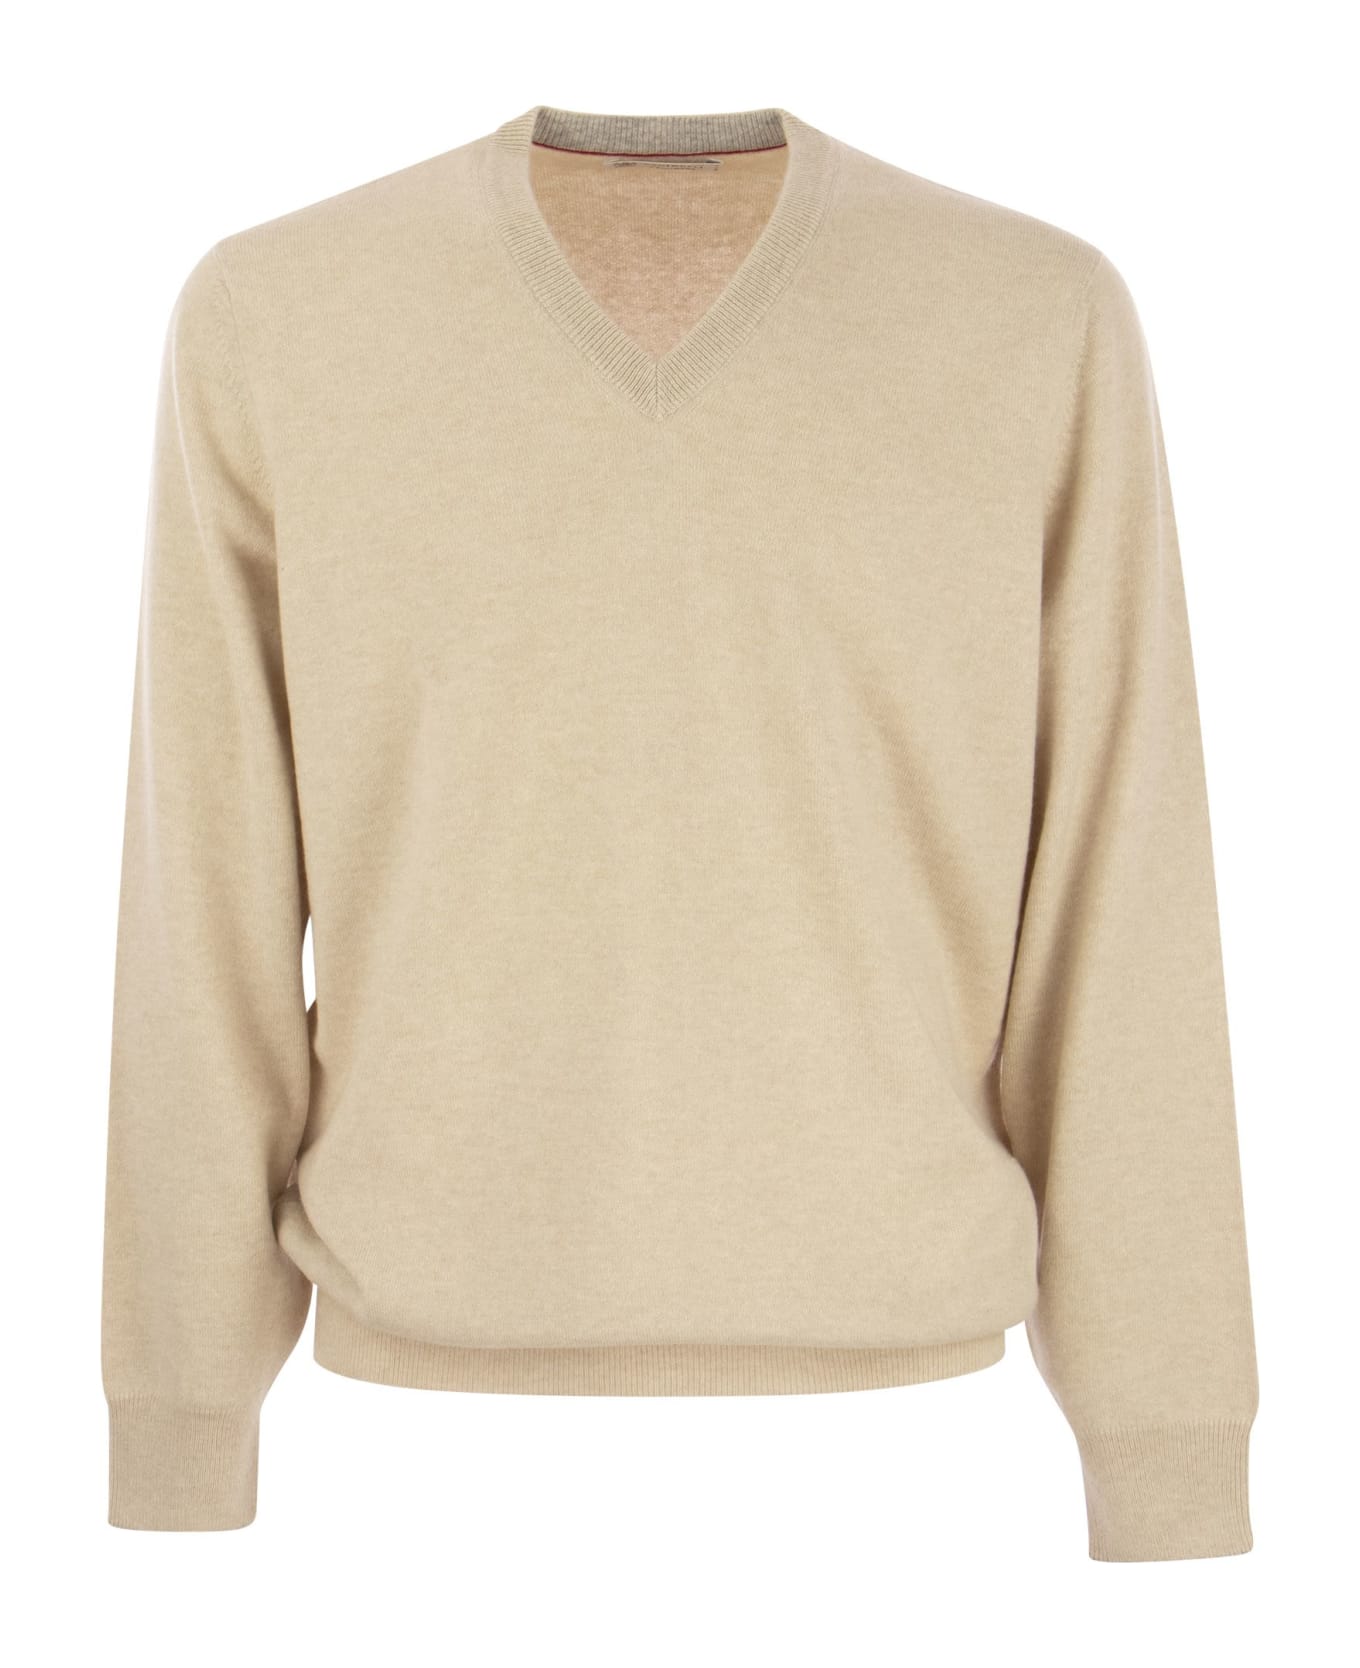 Brunello Cucinelli Cashmere V-neck Sweater - Sand